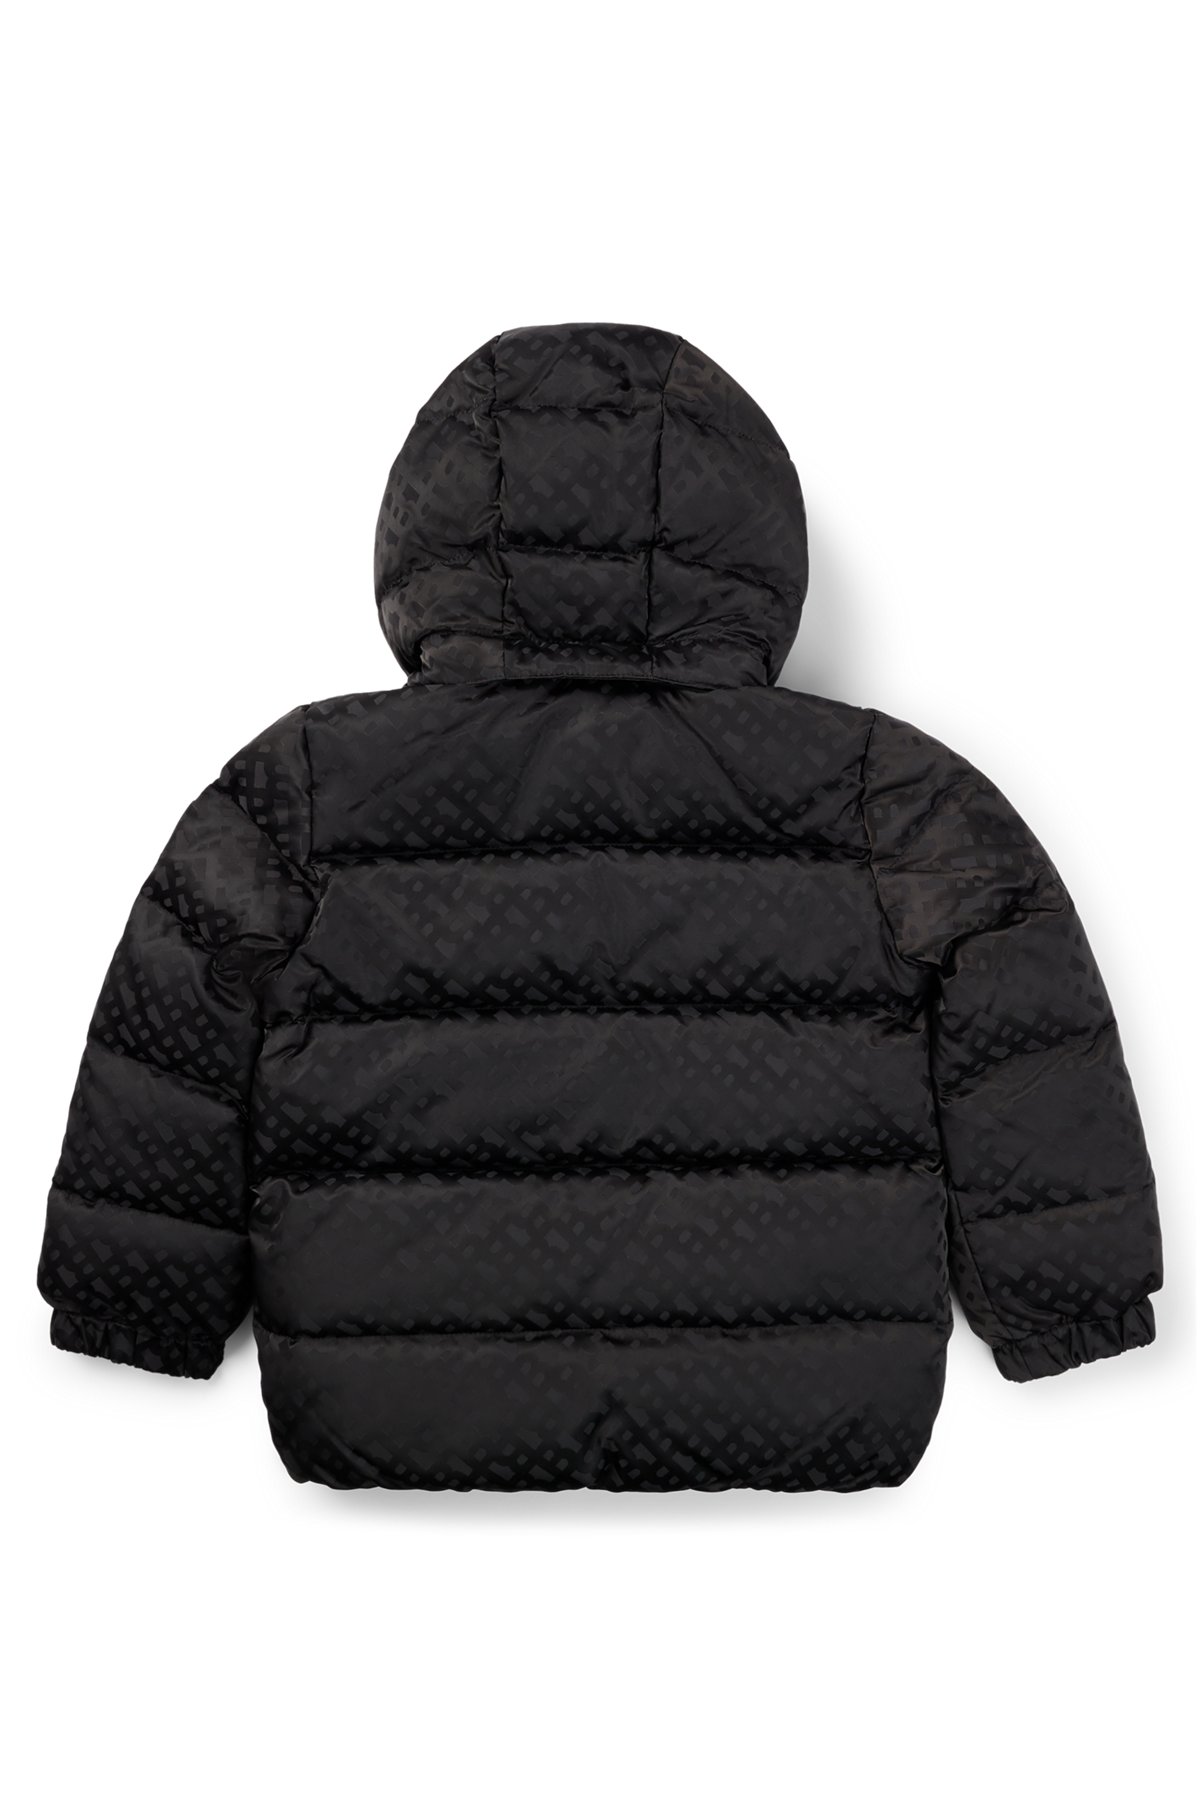 키즈 모노그램 패턴 소재 후드 재킷, 블랙